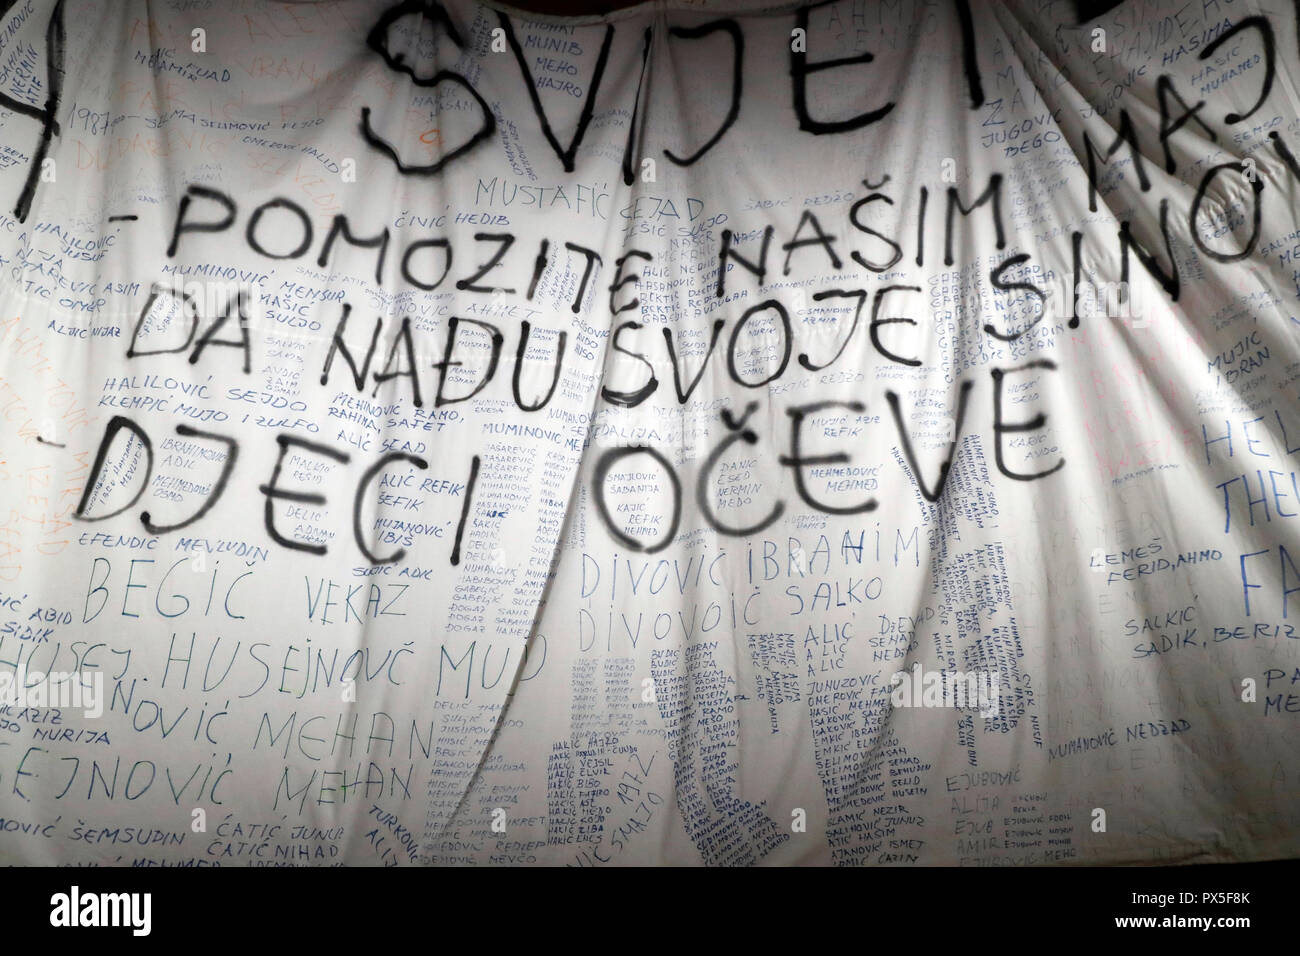 Musée international de la Croix-Rouge et du Croissant-Rouge (CICR). Avec de l'inscriptions, faites par femme de Srebrenica Association. Bosnie-herzégovine. 1996 Perm Banque D'Images